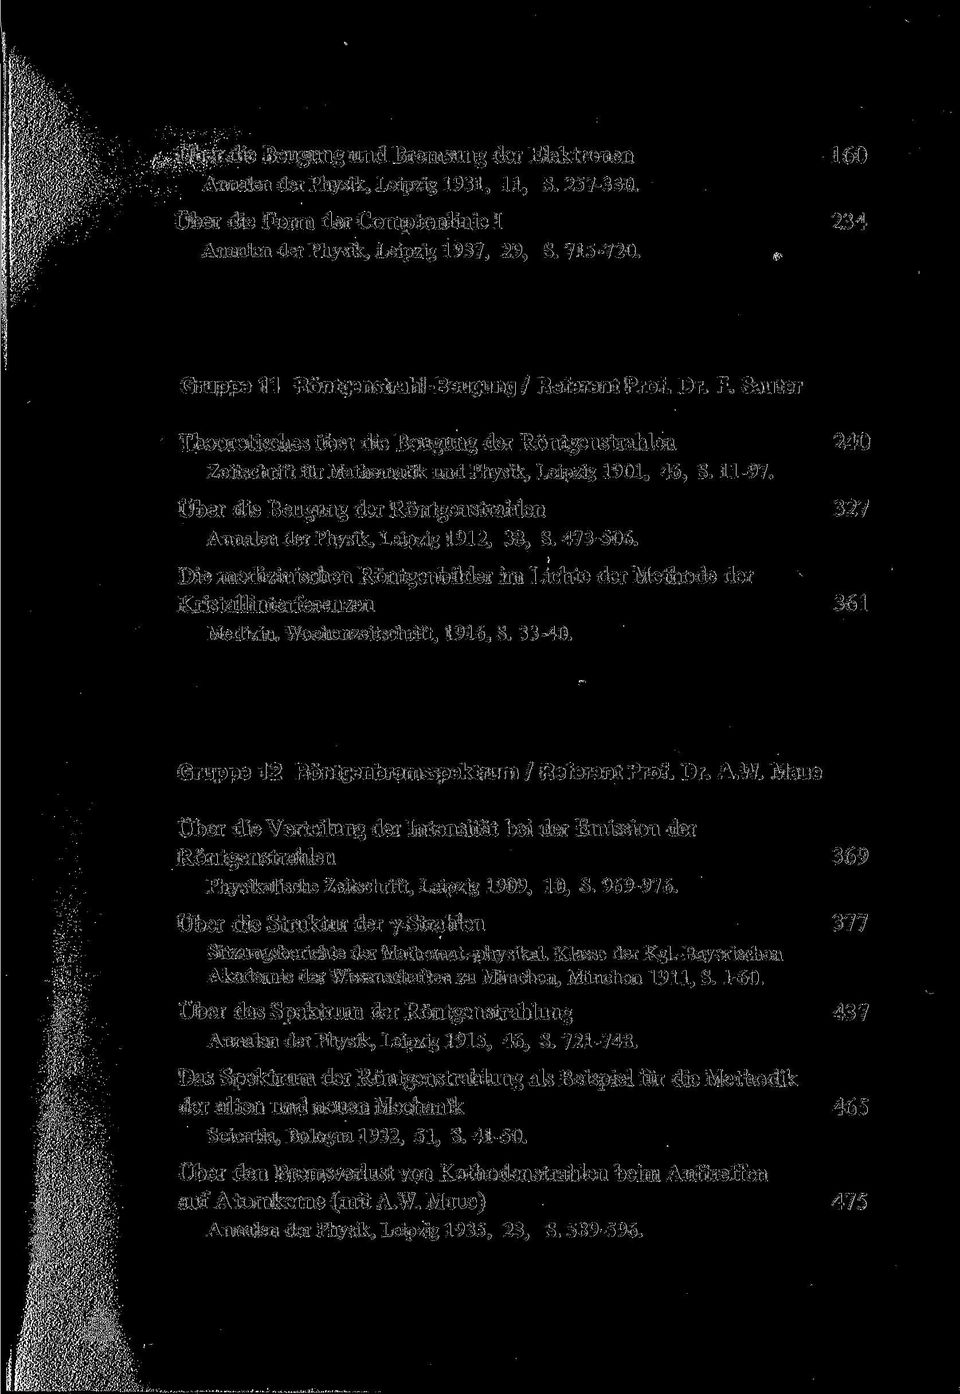 Über die Beugung der Röntgenstrahlen 327 Annalen der Physik, Leipzig 1912, 38, S. 473-506. Die medizinischen Röntgenbilder im Lichte der Methode der Kristallinterferenzen 361 Medizin.